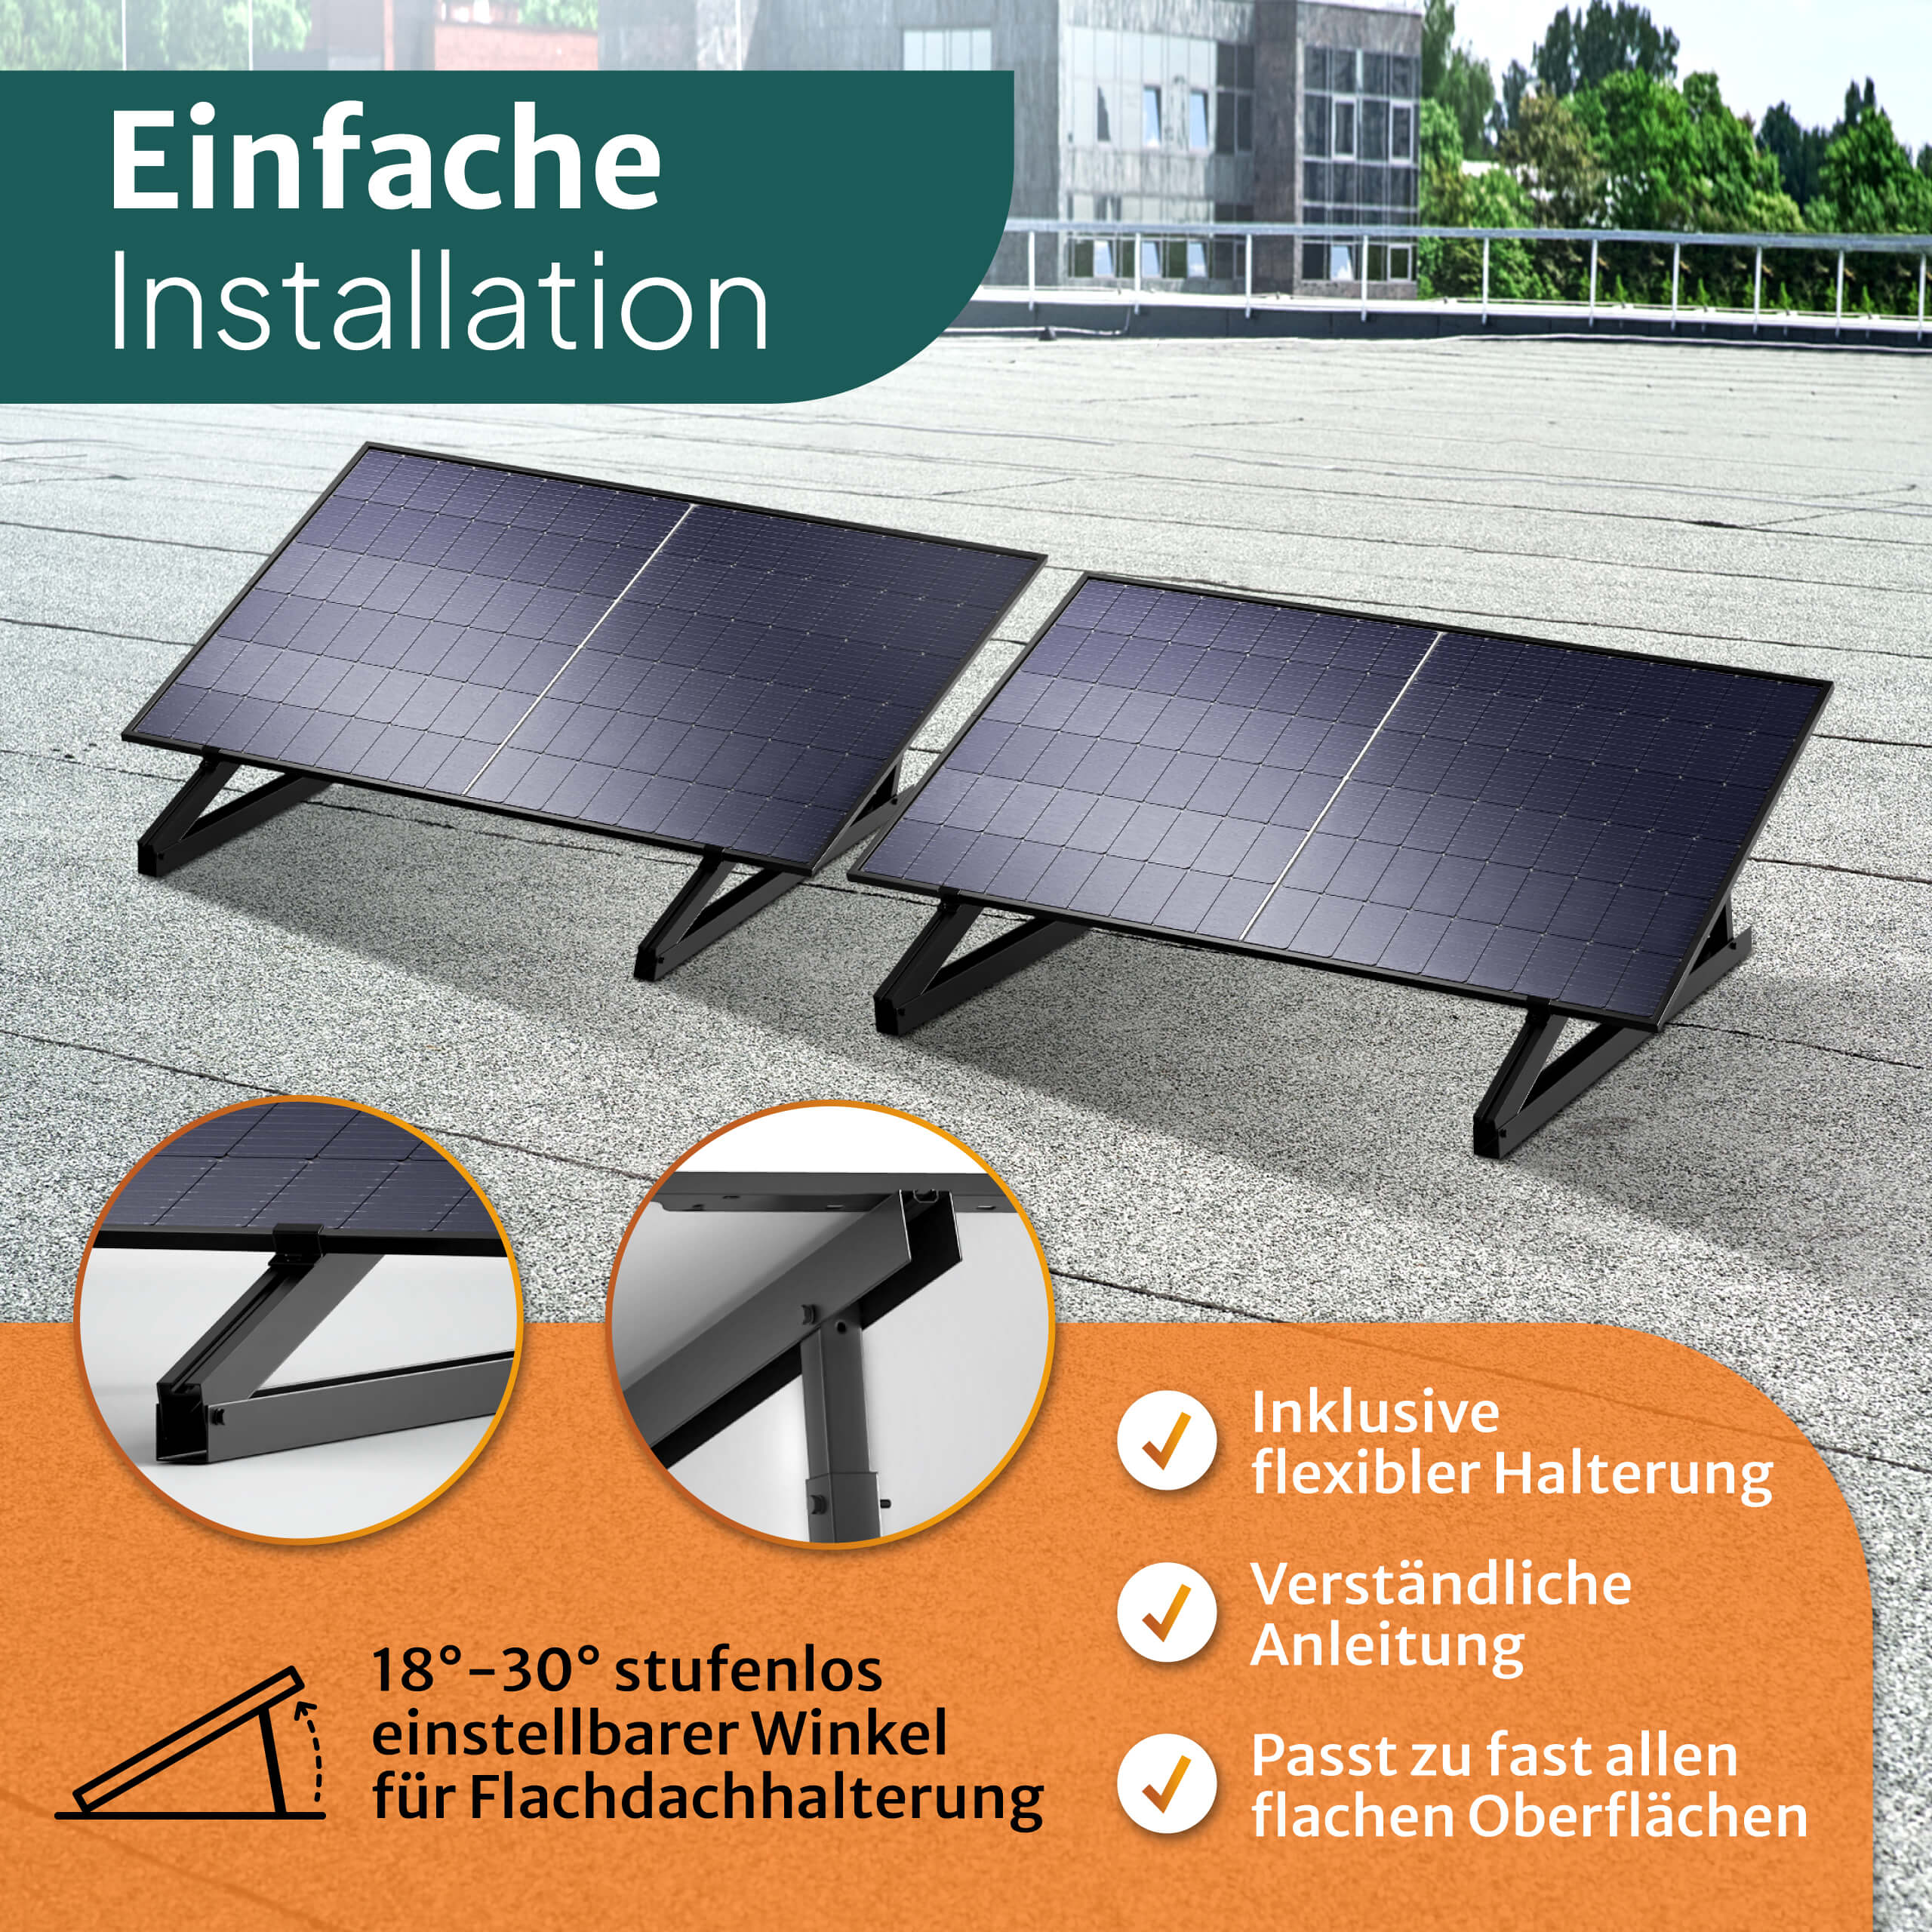 850W Kabel - 15m Flachdach-Halterung Balkon-Solaranlage STROMGANZEINFACH mit